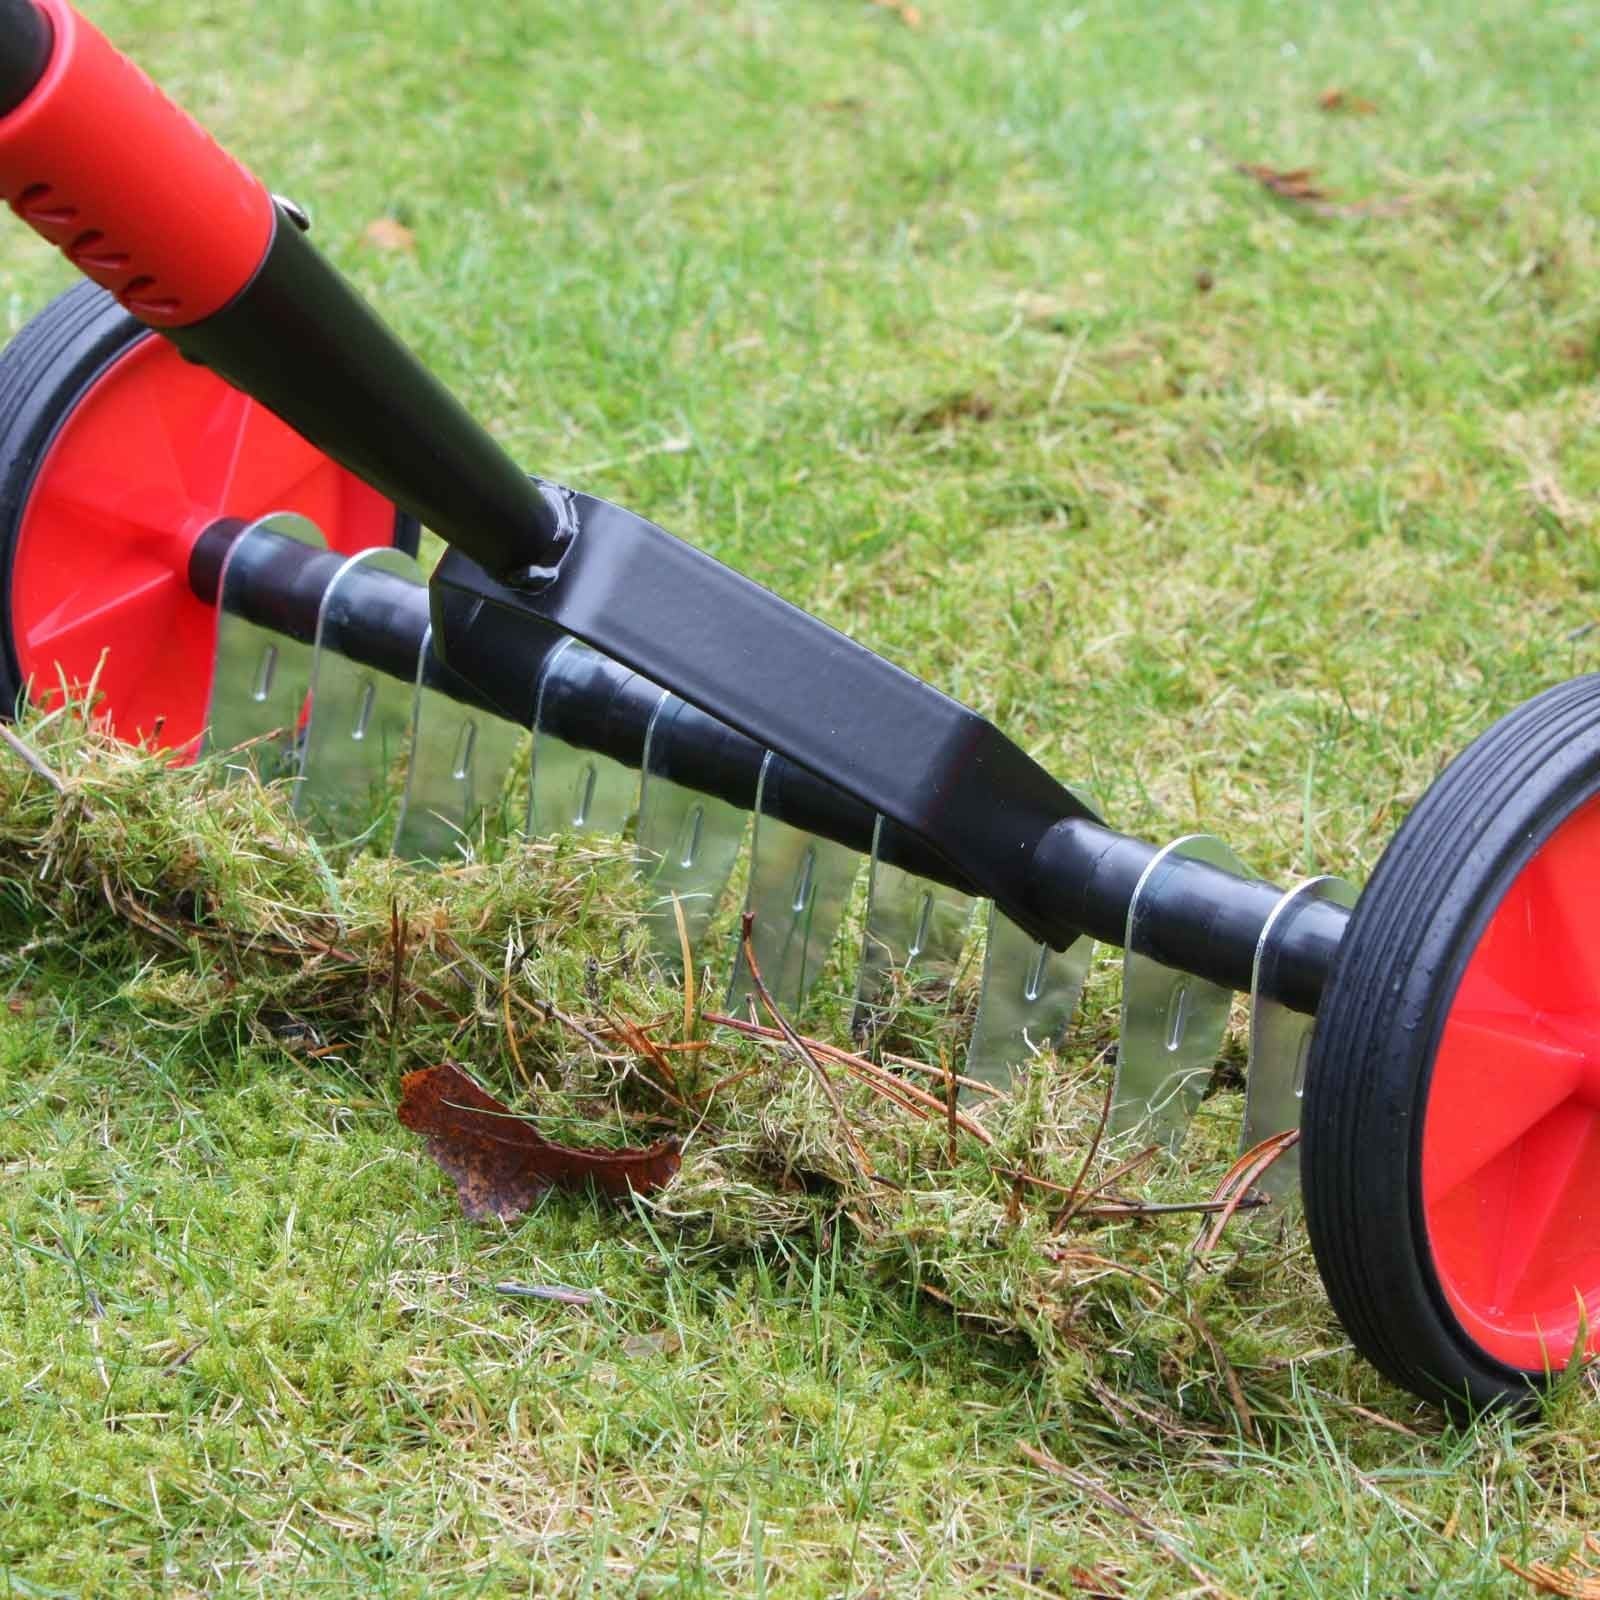 Wheeled Lawn Scarifier - Harrod Horticultural (UK)